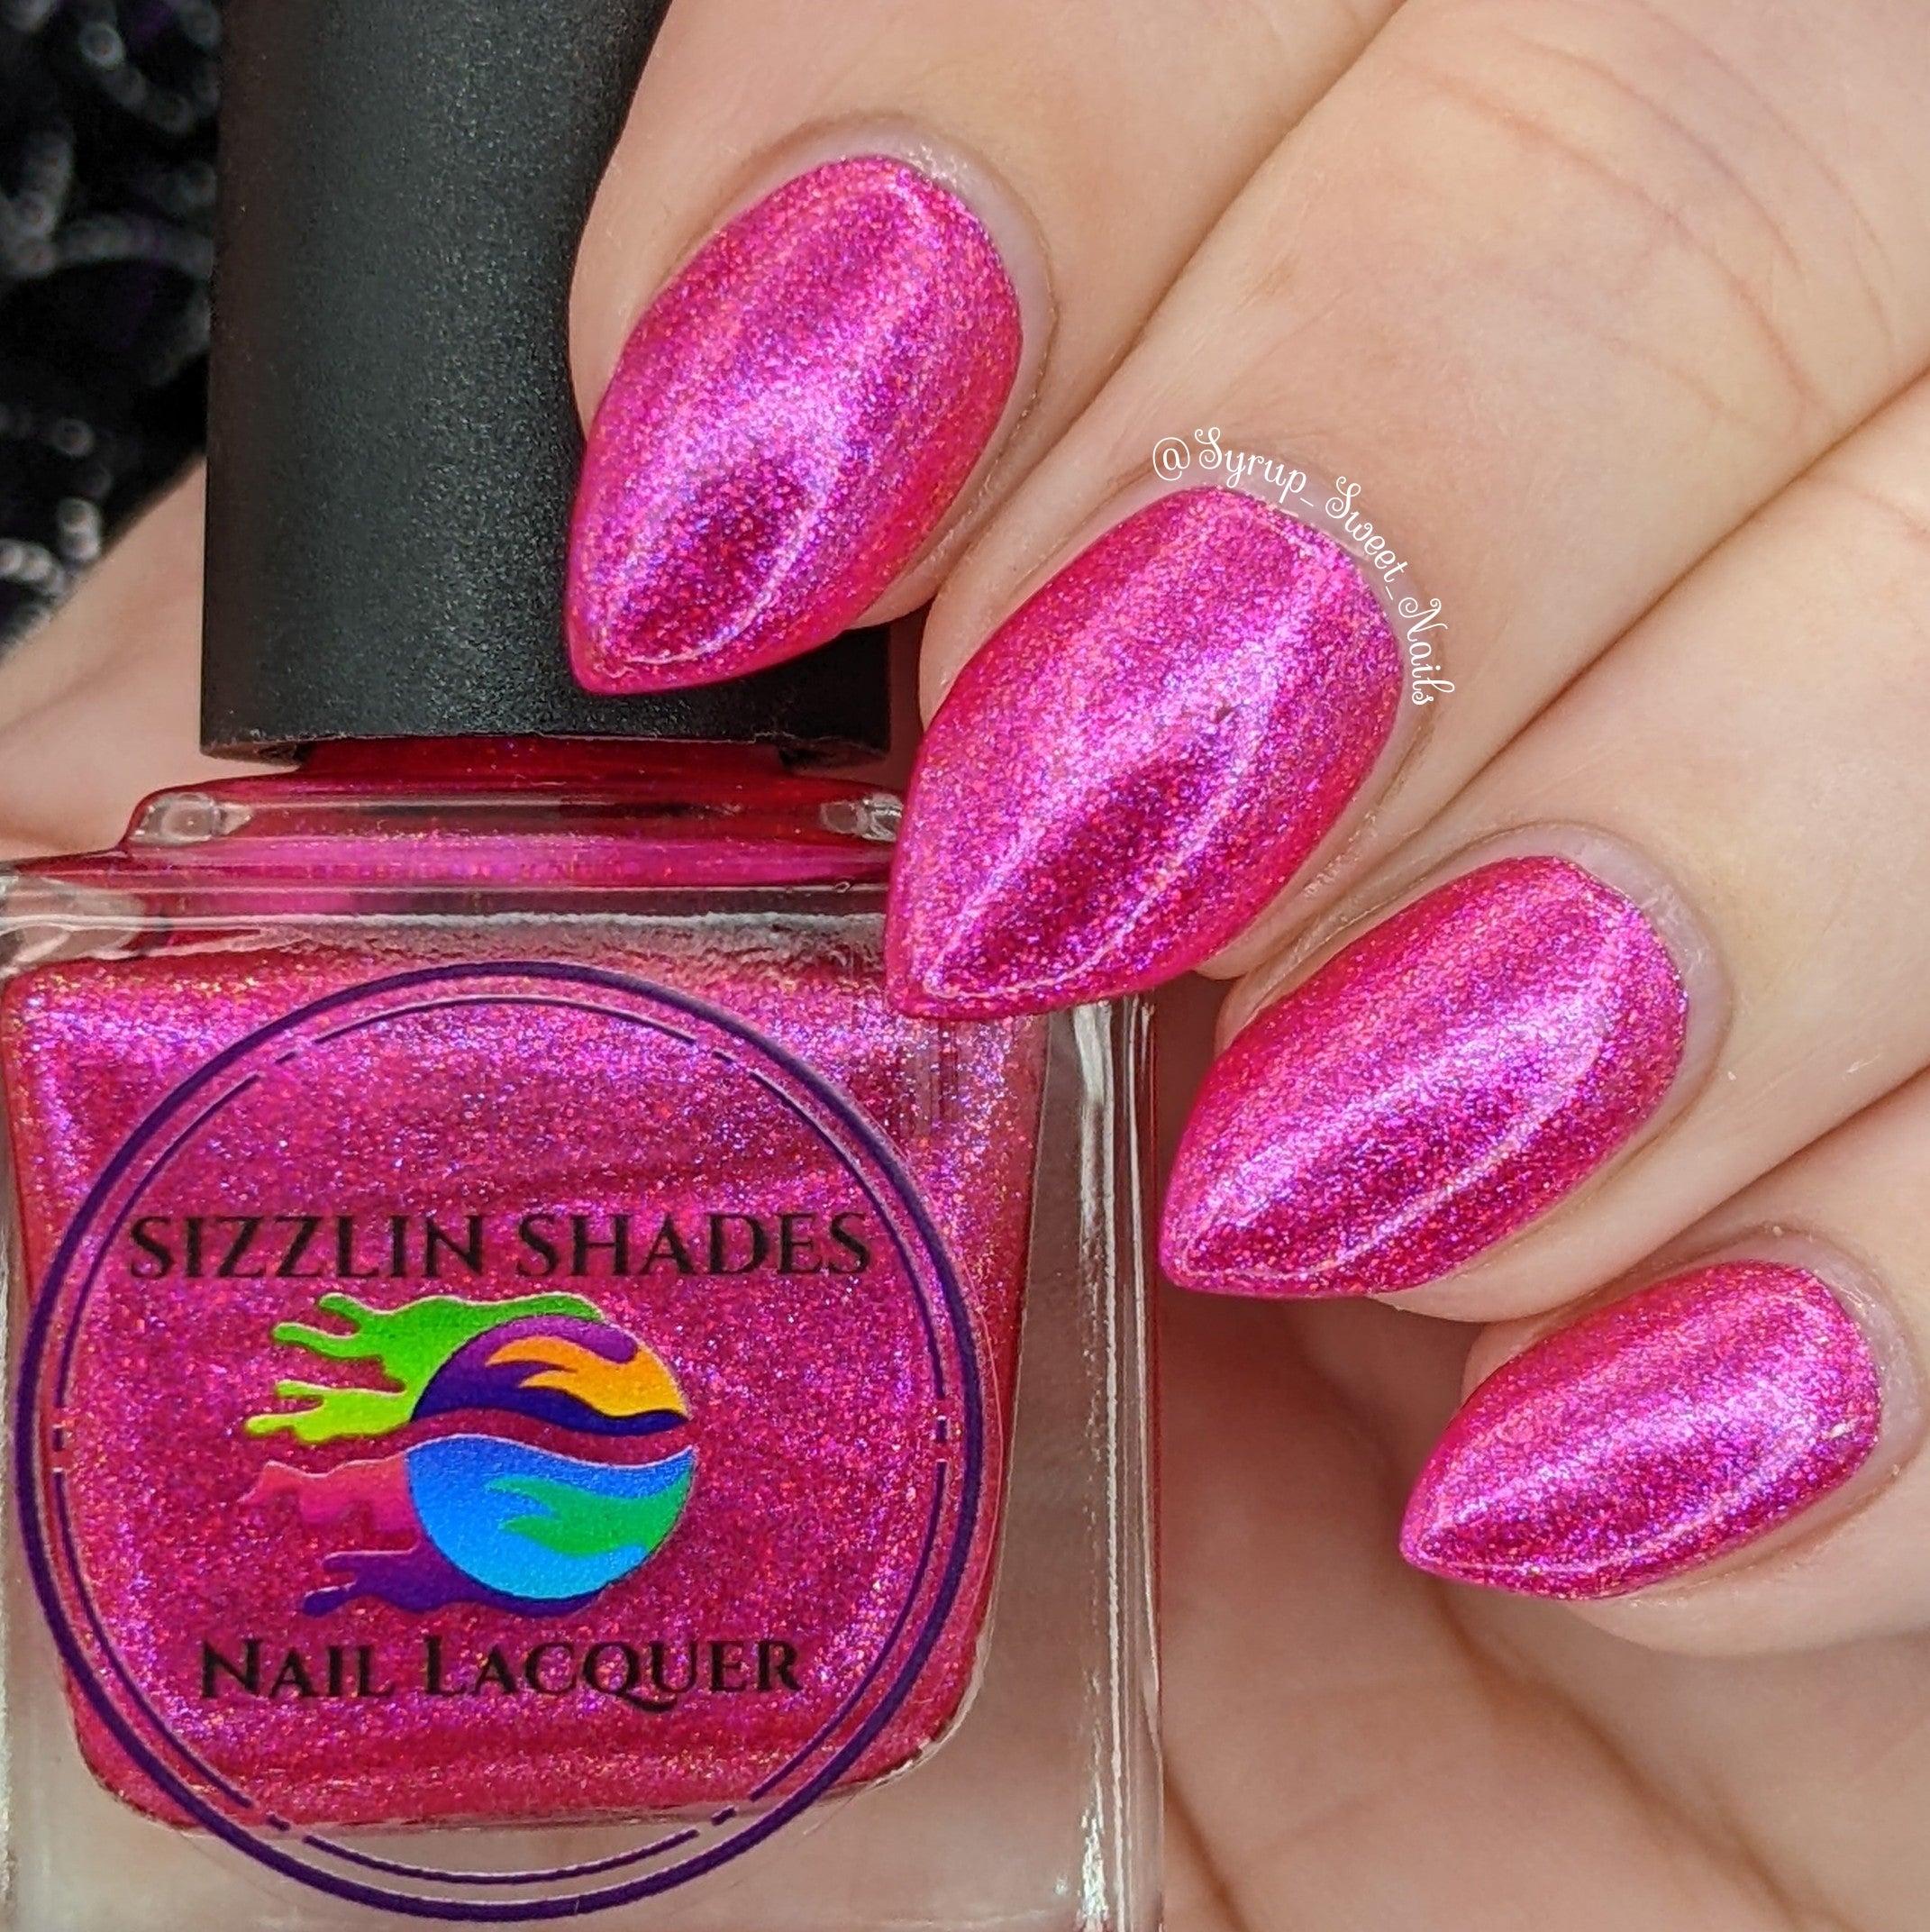 OPI® UK: Shop our Pink Nail Polish Shades